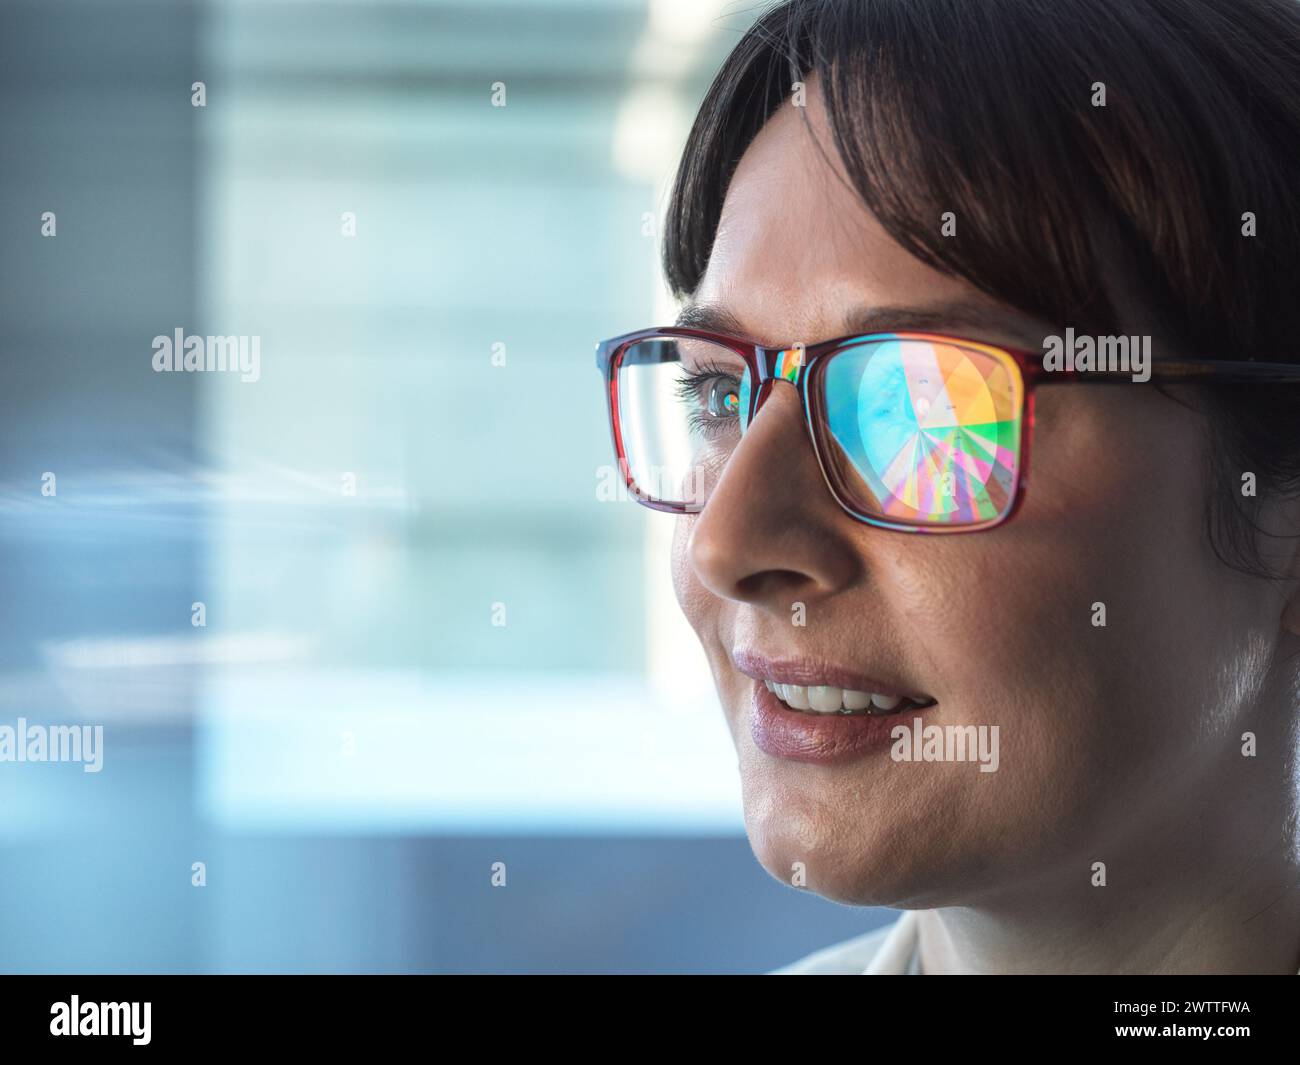 Professionelle Frauen entwerfen ein Tortendiagramm auf einem Computer, um Unternehmensstatistiken zu veranschaulichen. Stockfoto